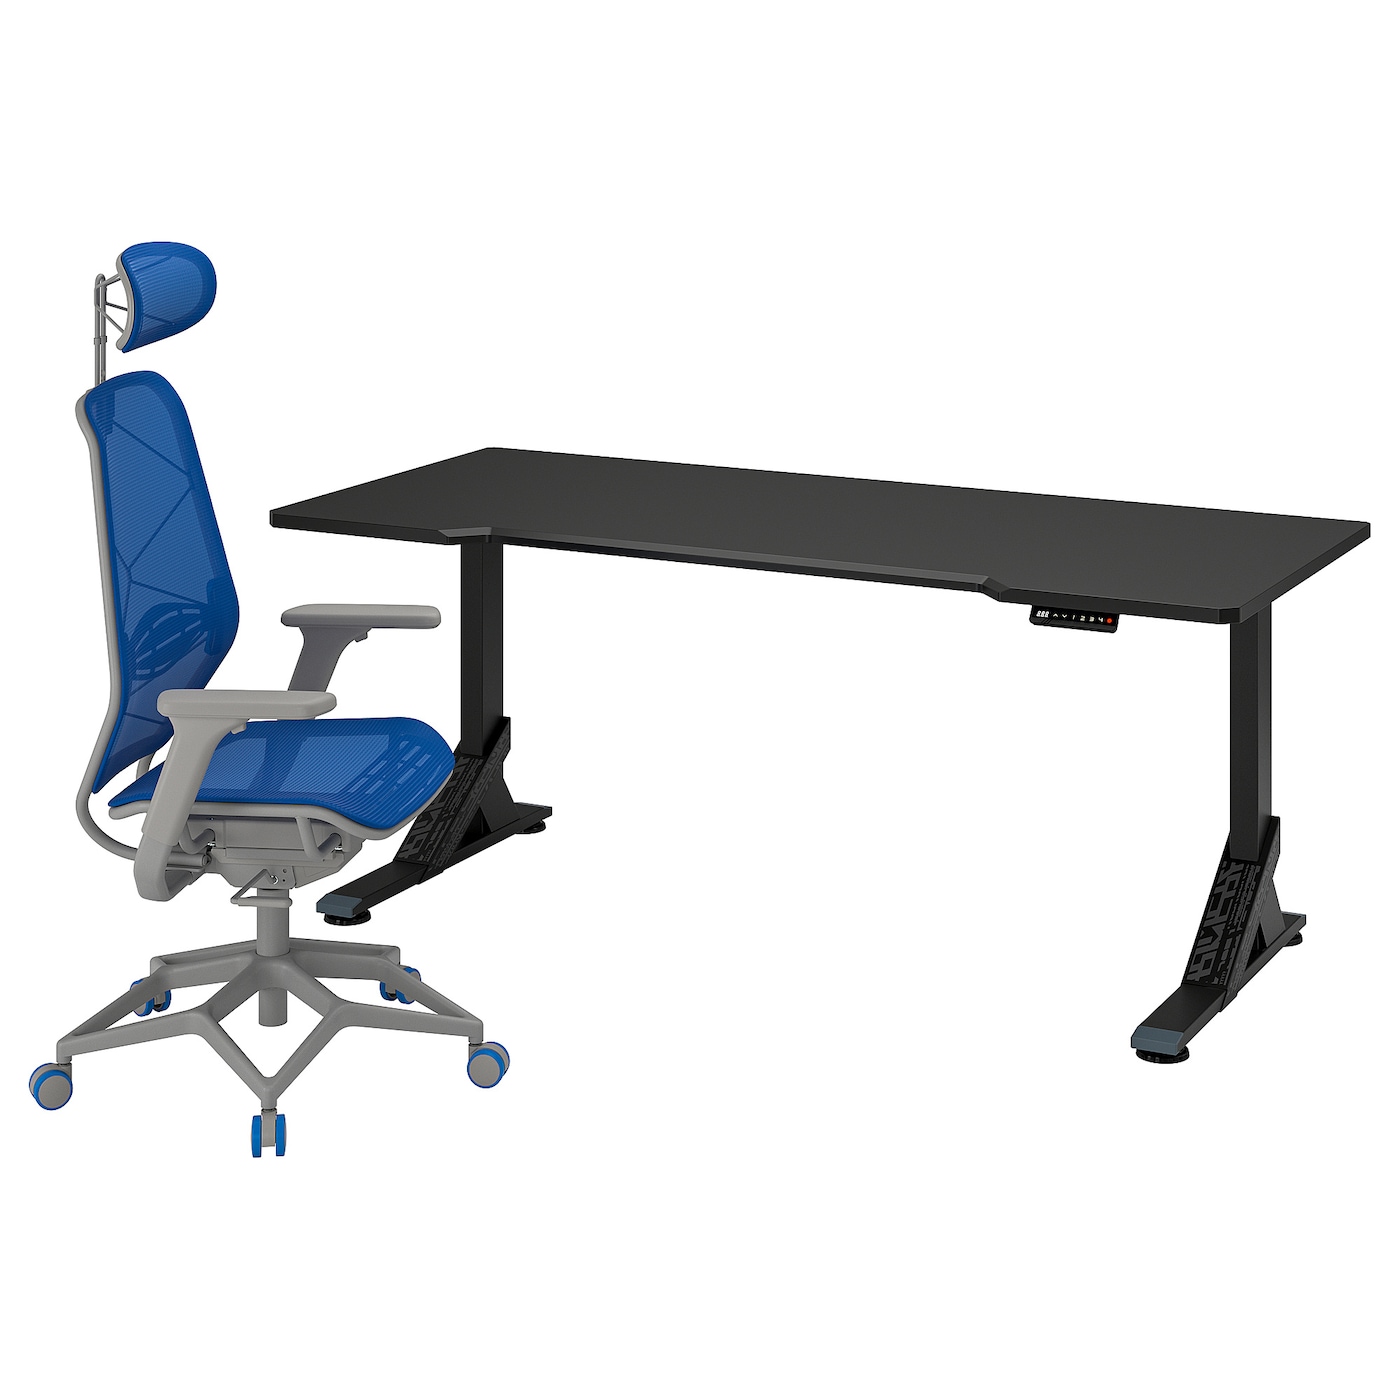 Игровой стол и стул - IKEA UPPSPEL / STYRSPEL, 180х80 см, черный/серый/синий, УППСПЕЛ/СТИРСПЕЛ ИКЕА